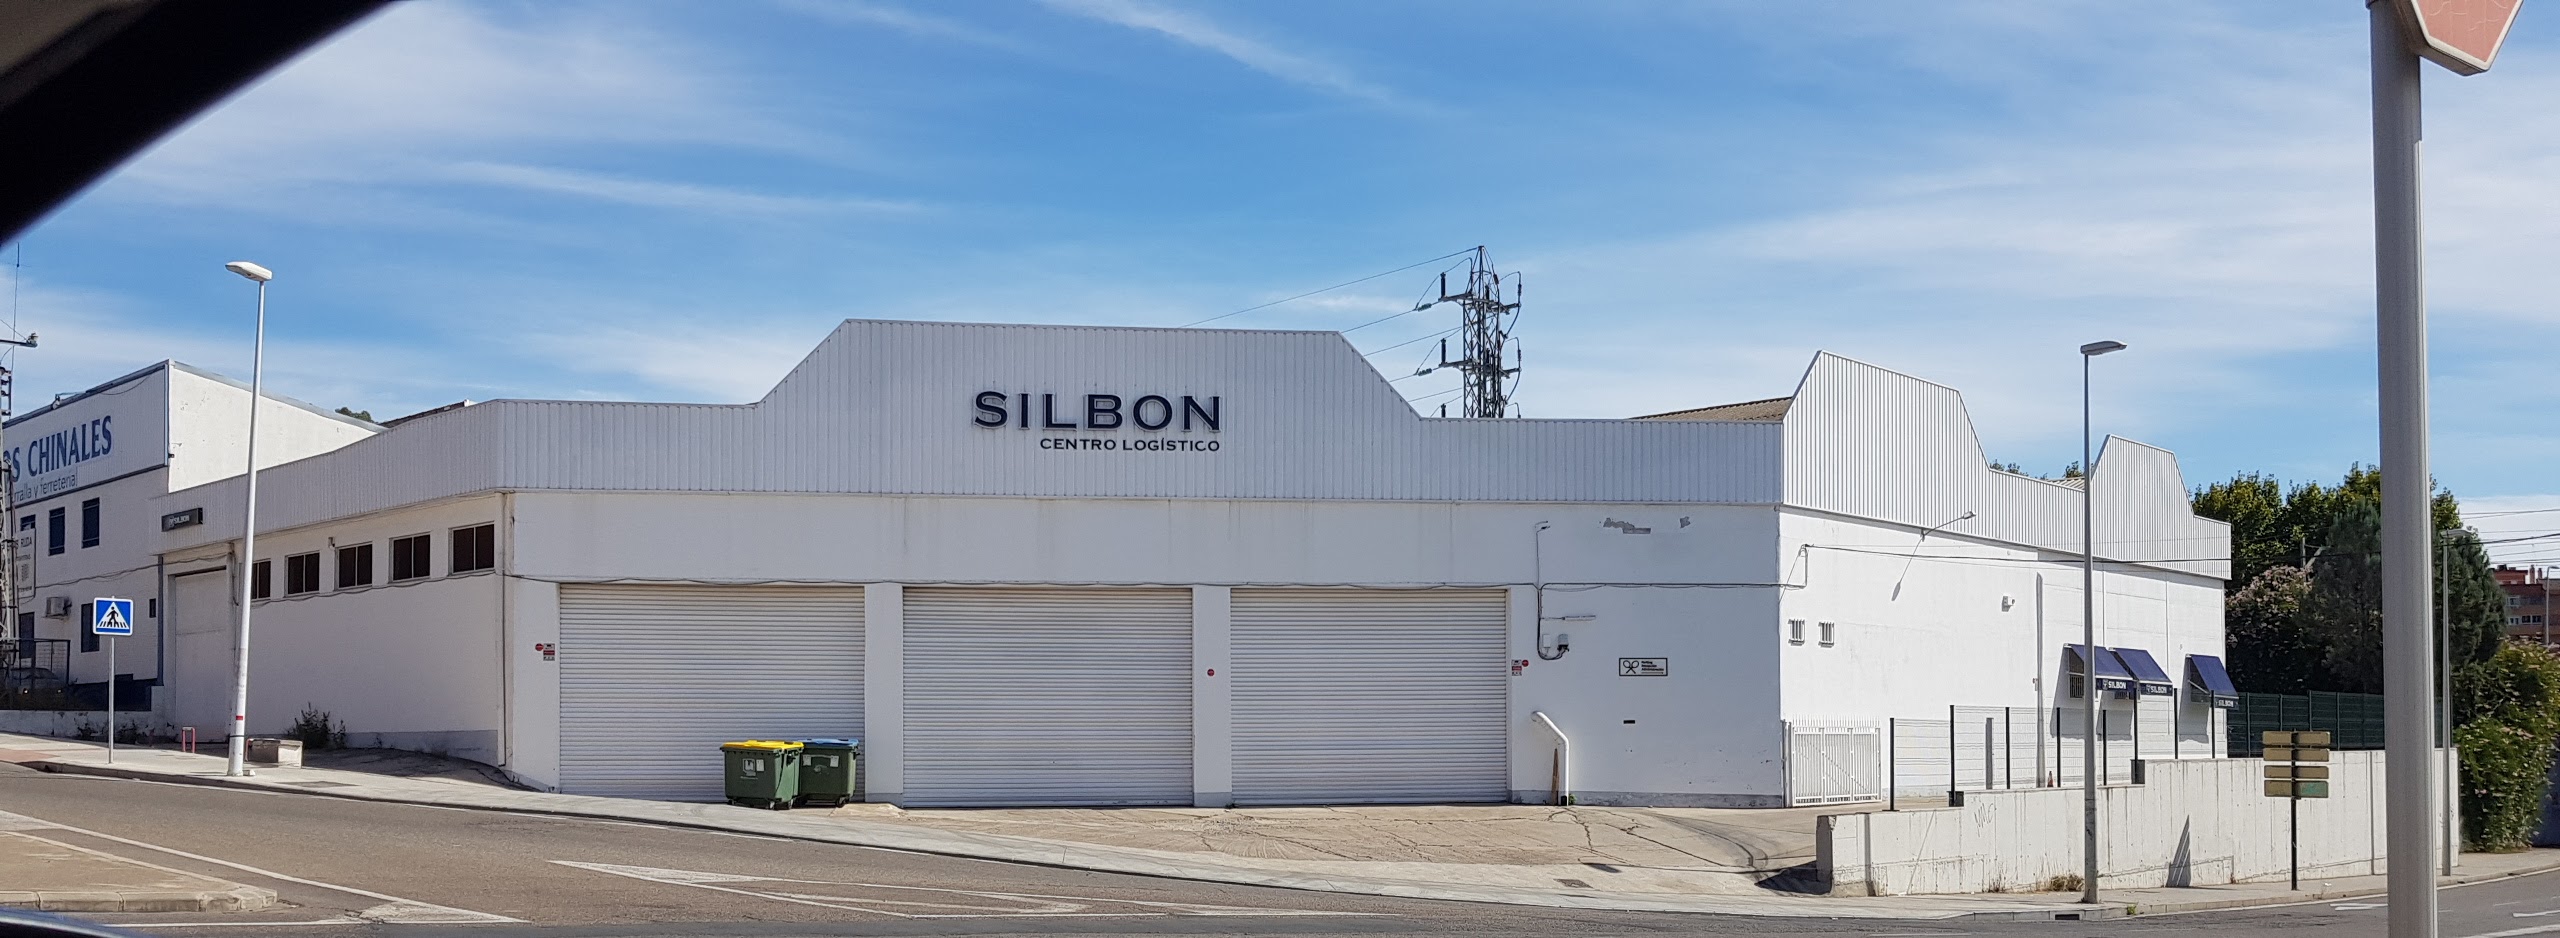 La empresa cordobesa Silbon crece en ventas el 50% con respecto al año anterior